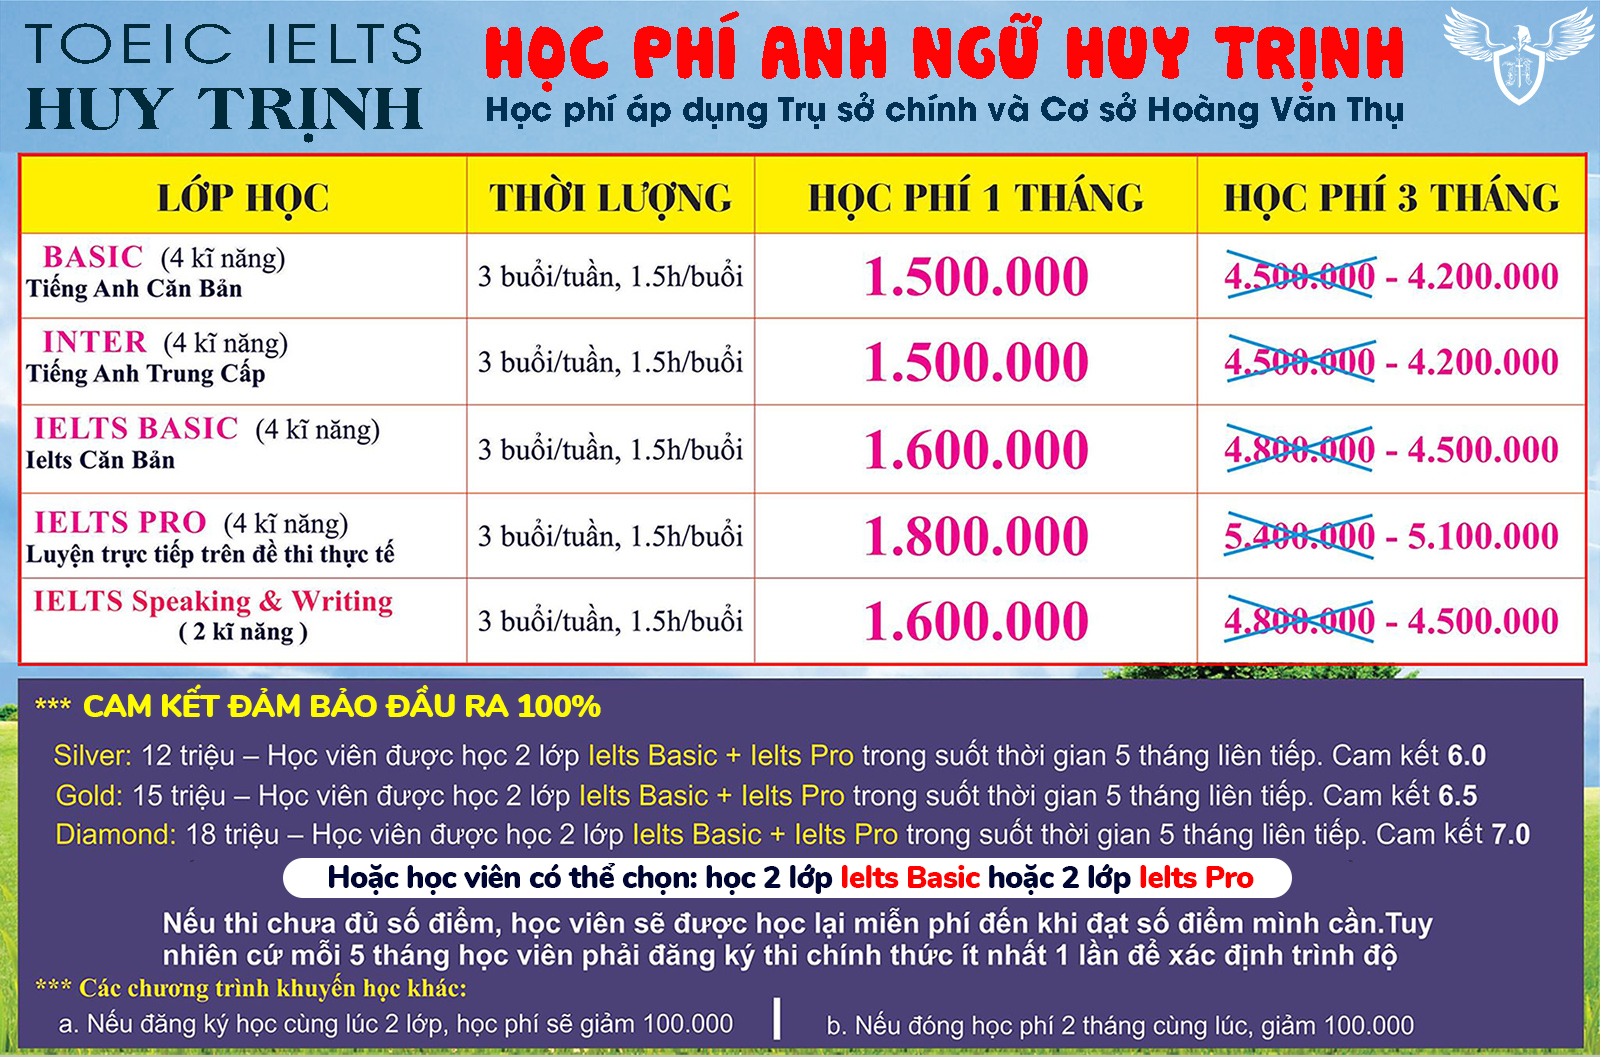 CHỈNH SỬA HỌC PHÍ 2020 - Học Phí Anh Ngữ Huy Trịnh